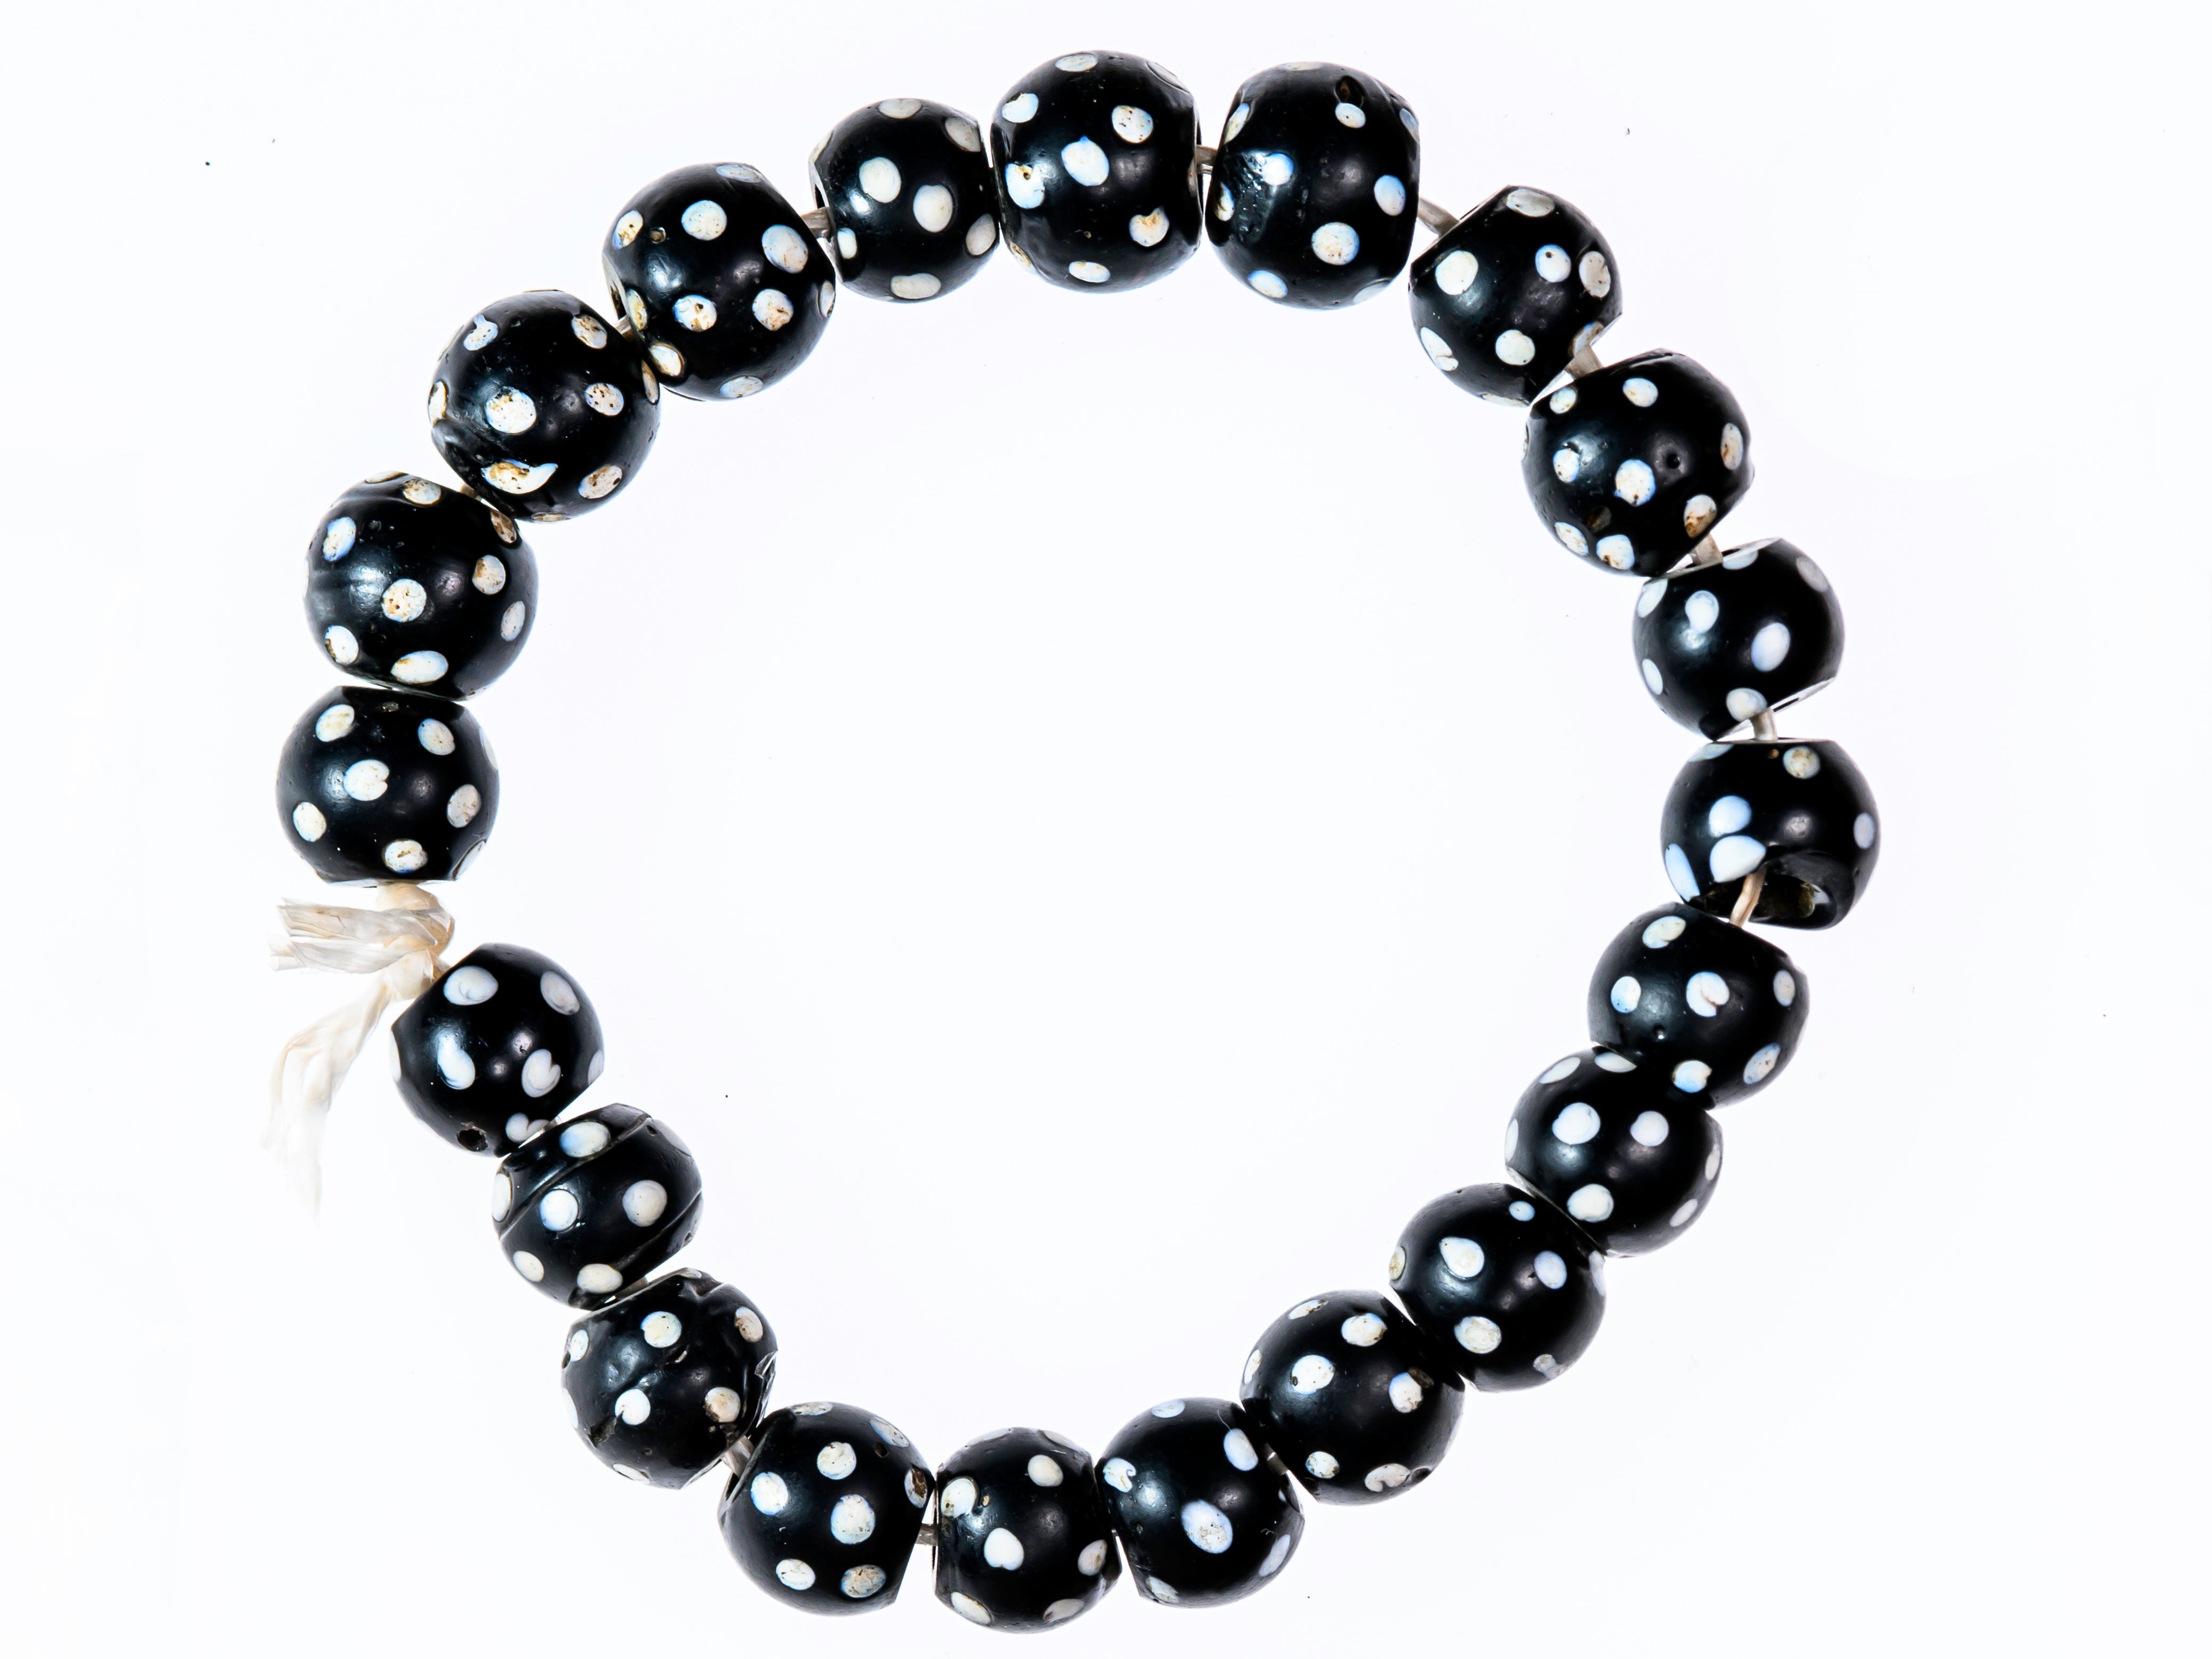 Old Black & White Skunk Eye Beads (Long Strand)